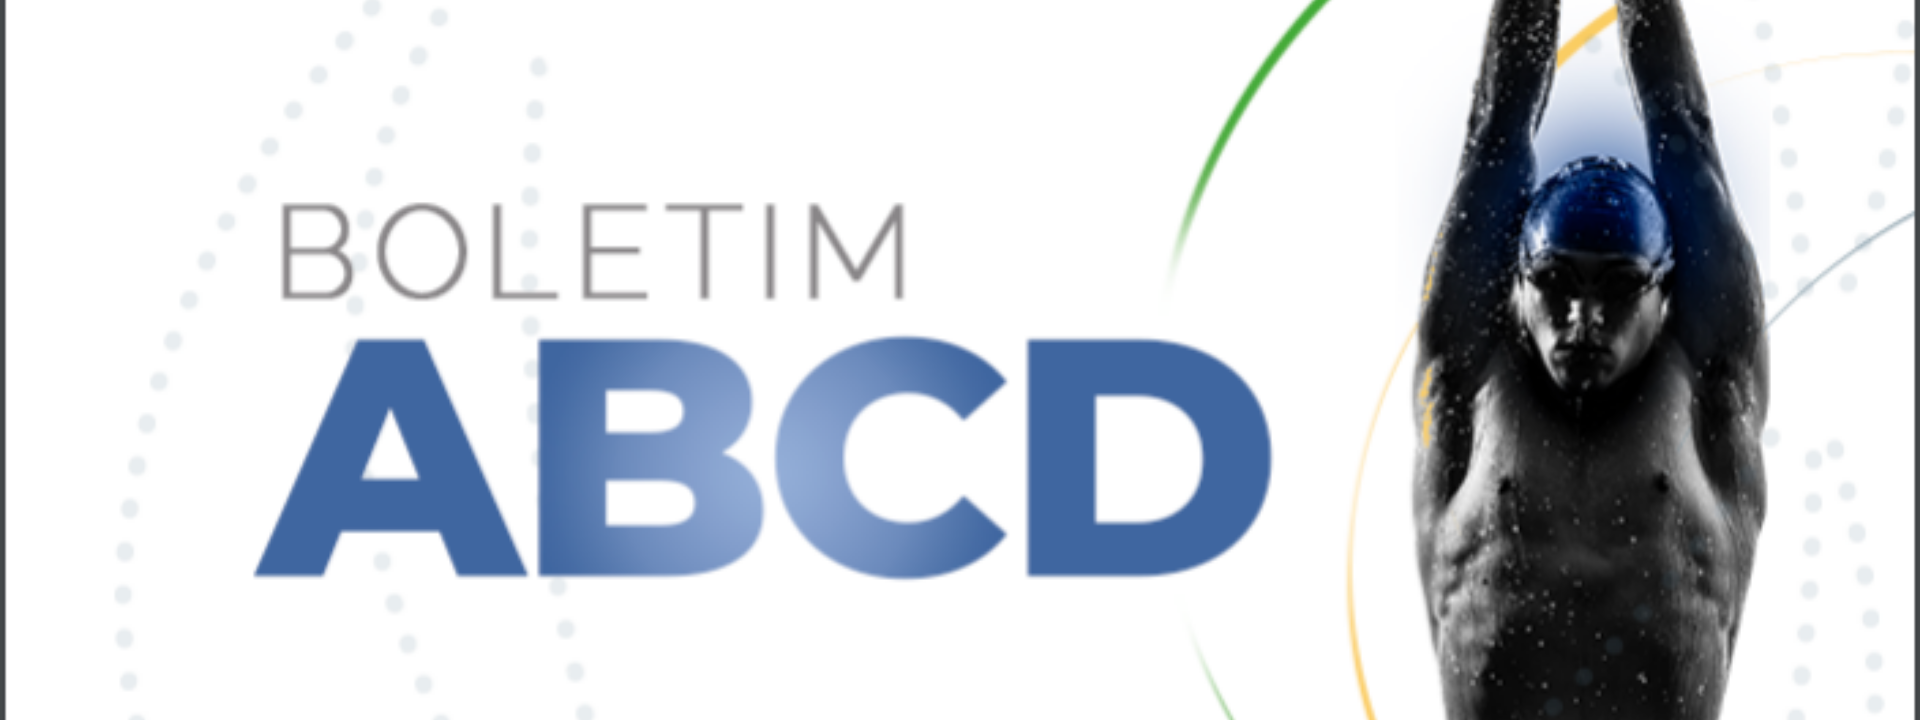 Autoridade Brasileira de Controle de Dopagem (ABCD) divulga Boletim do mês de julho, com destaque para ações antidopagem nos Jogos Olímpicos de Tóquio 2020